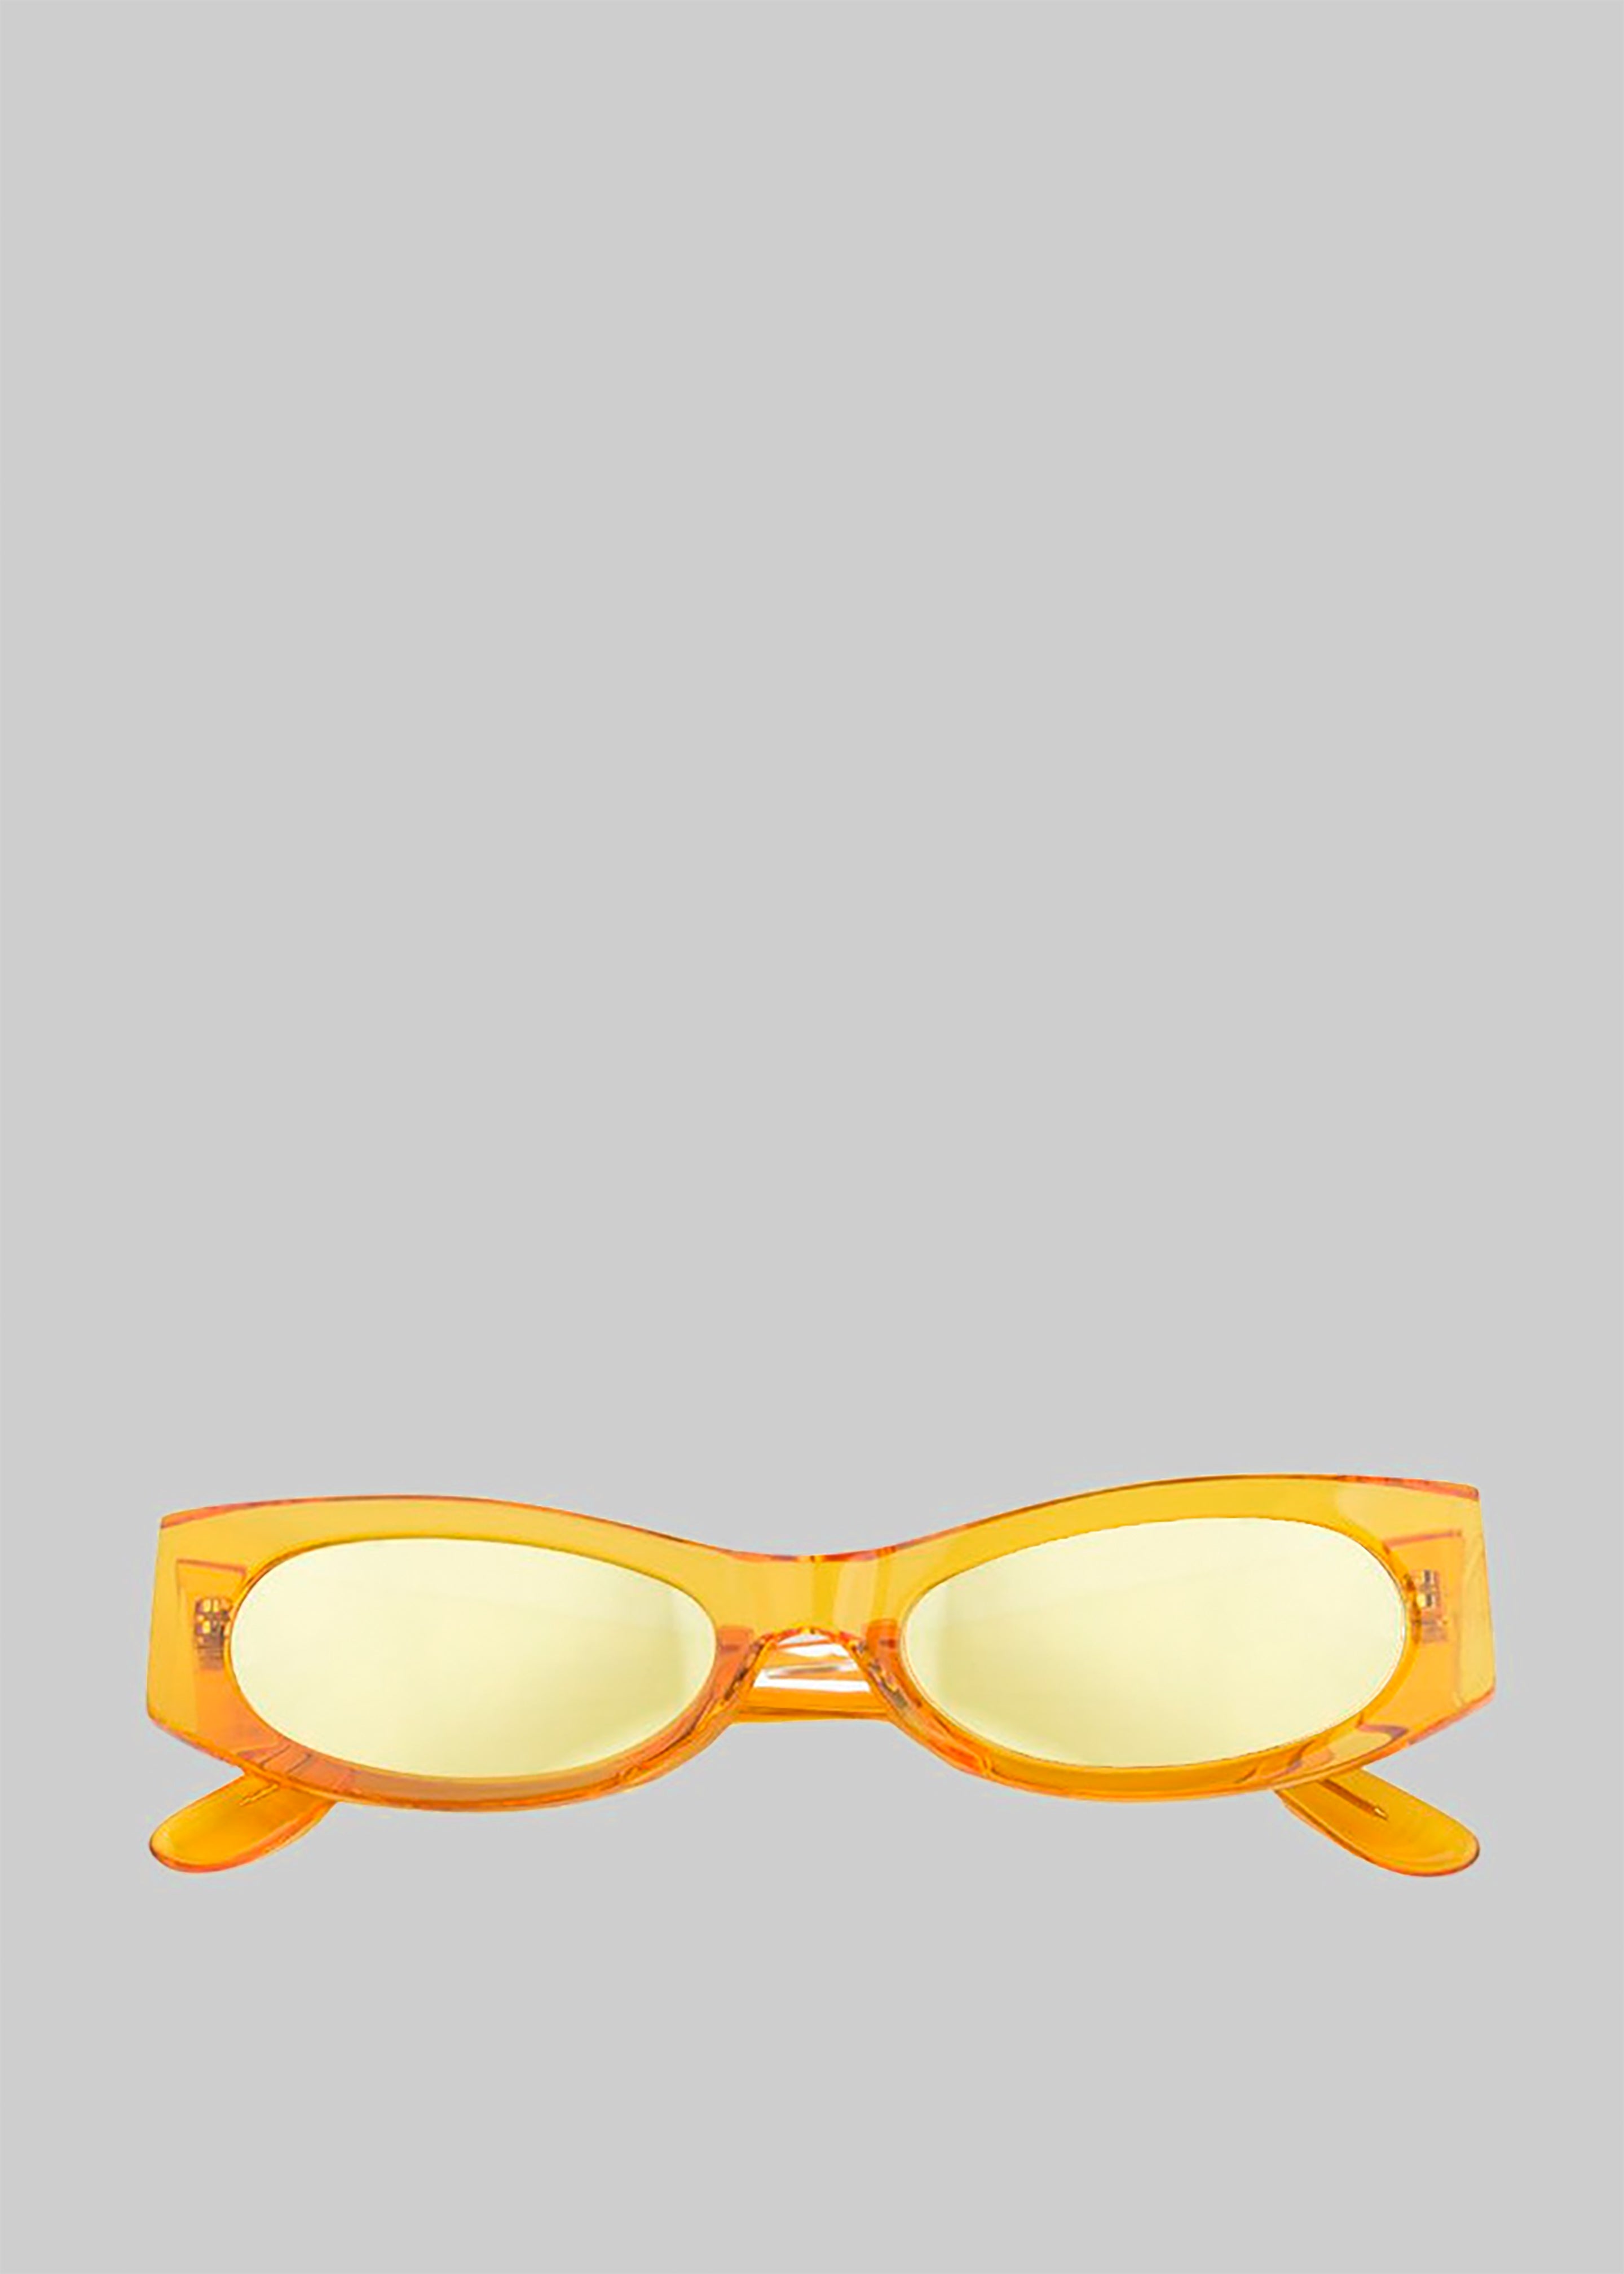 Karen Wazen Ciara Sunglasses - Bumblebee - 3